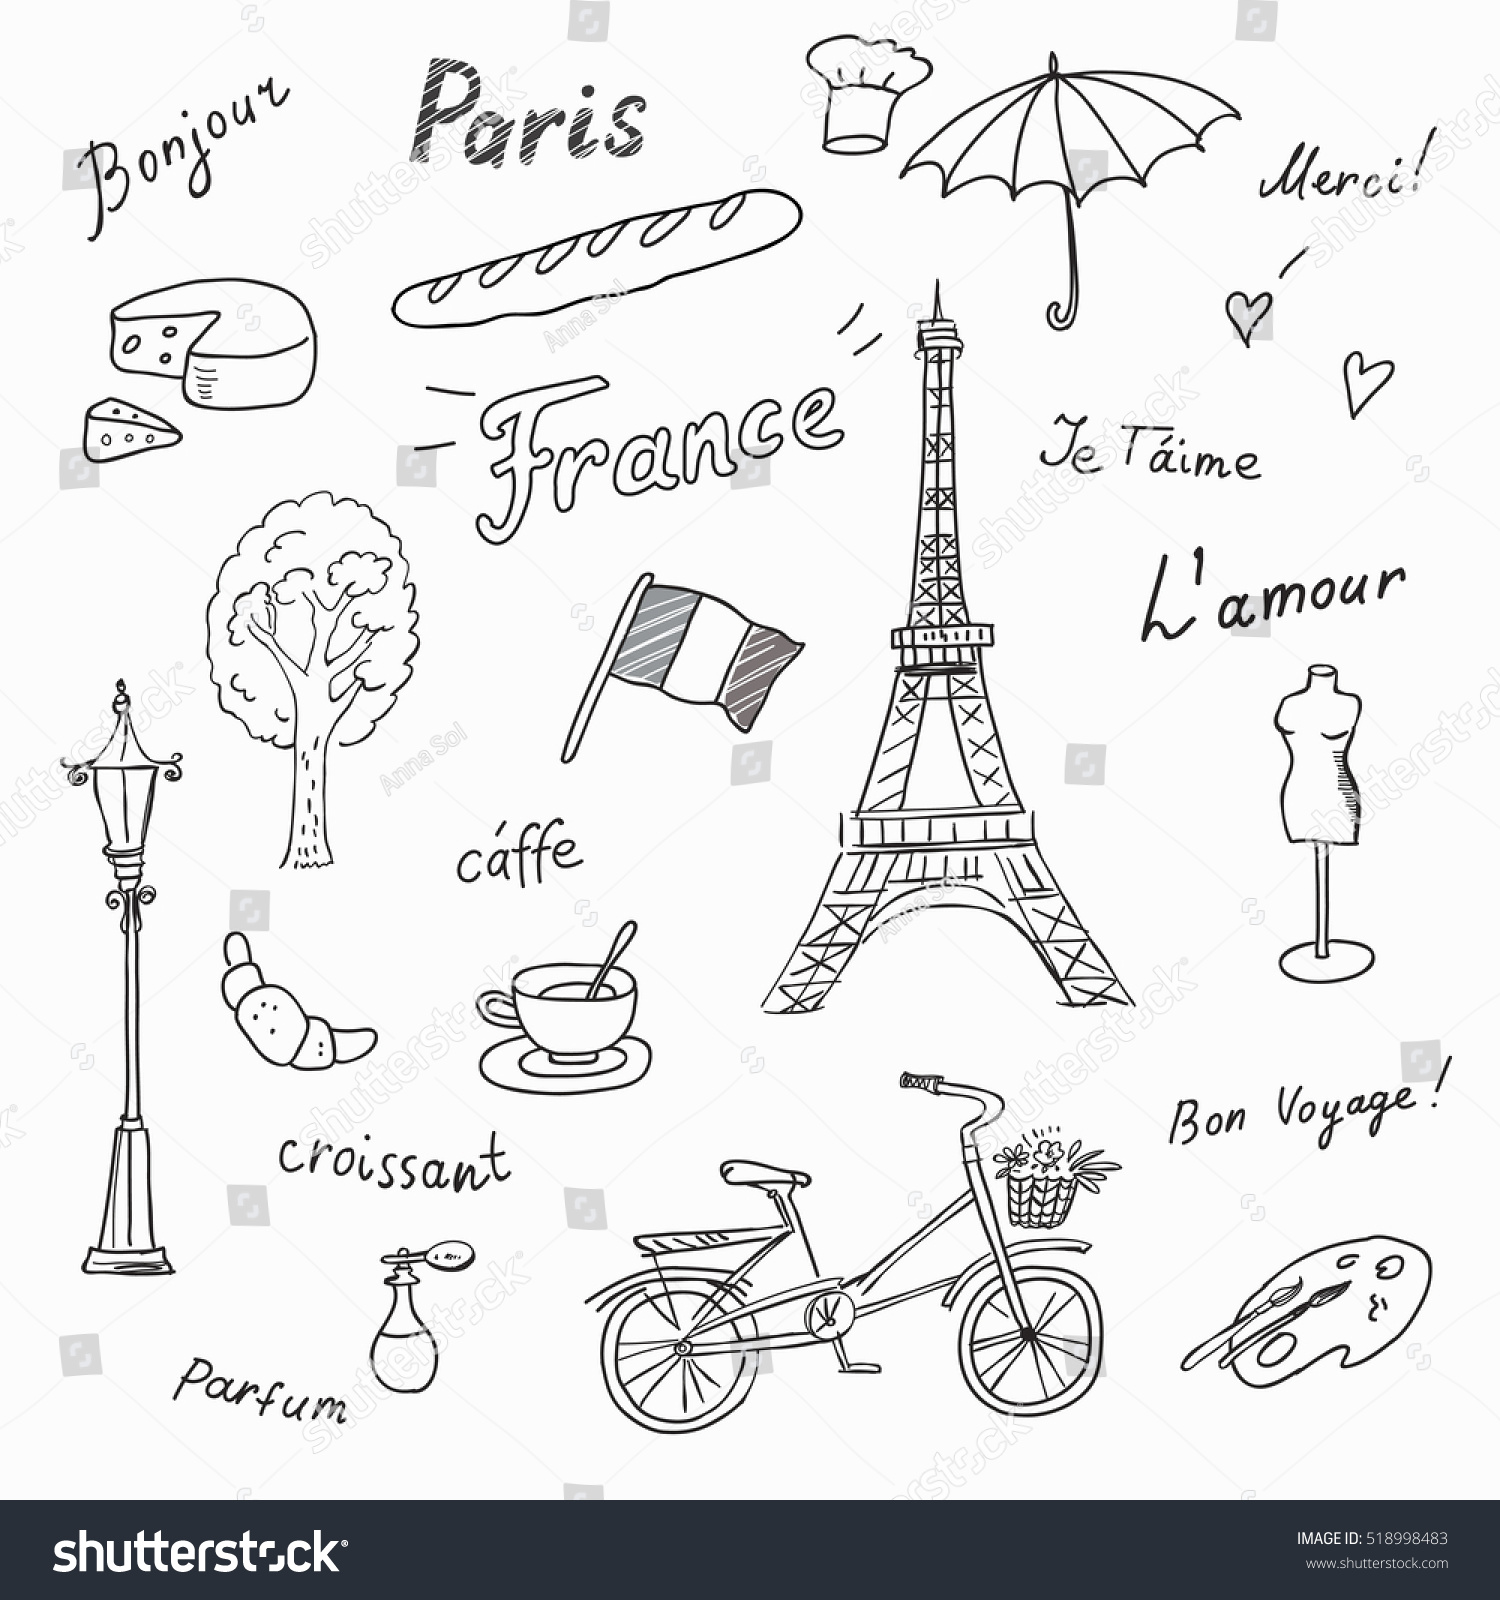 Франция слово в форме рисунка